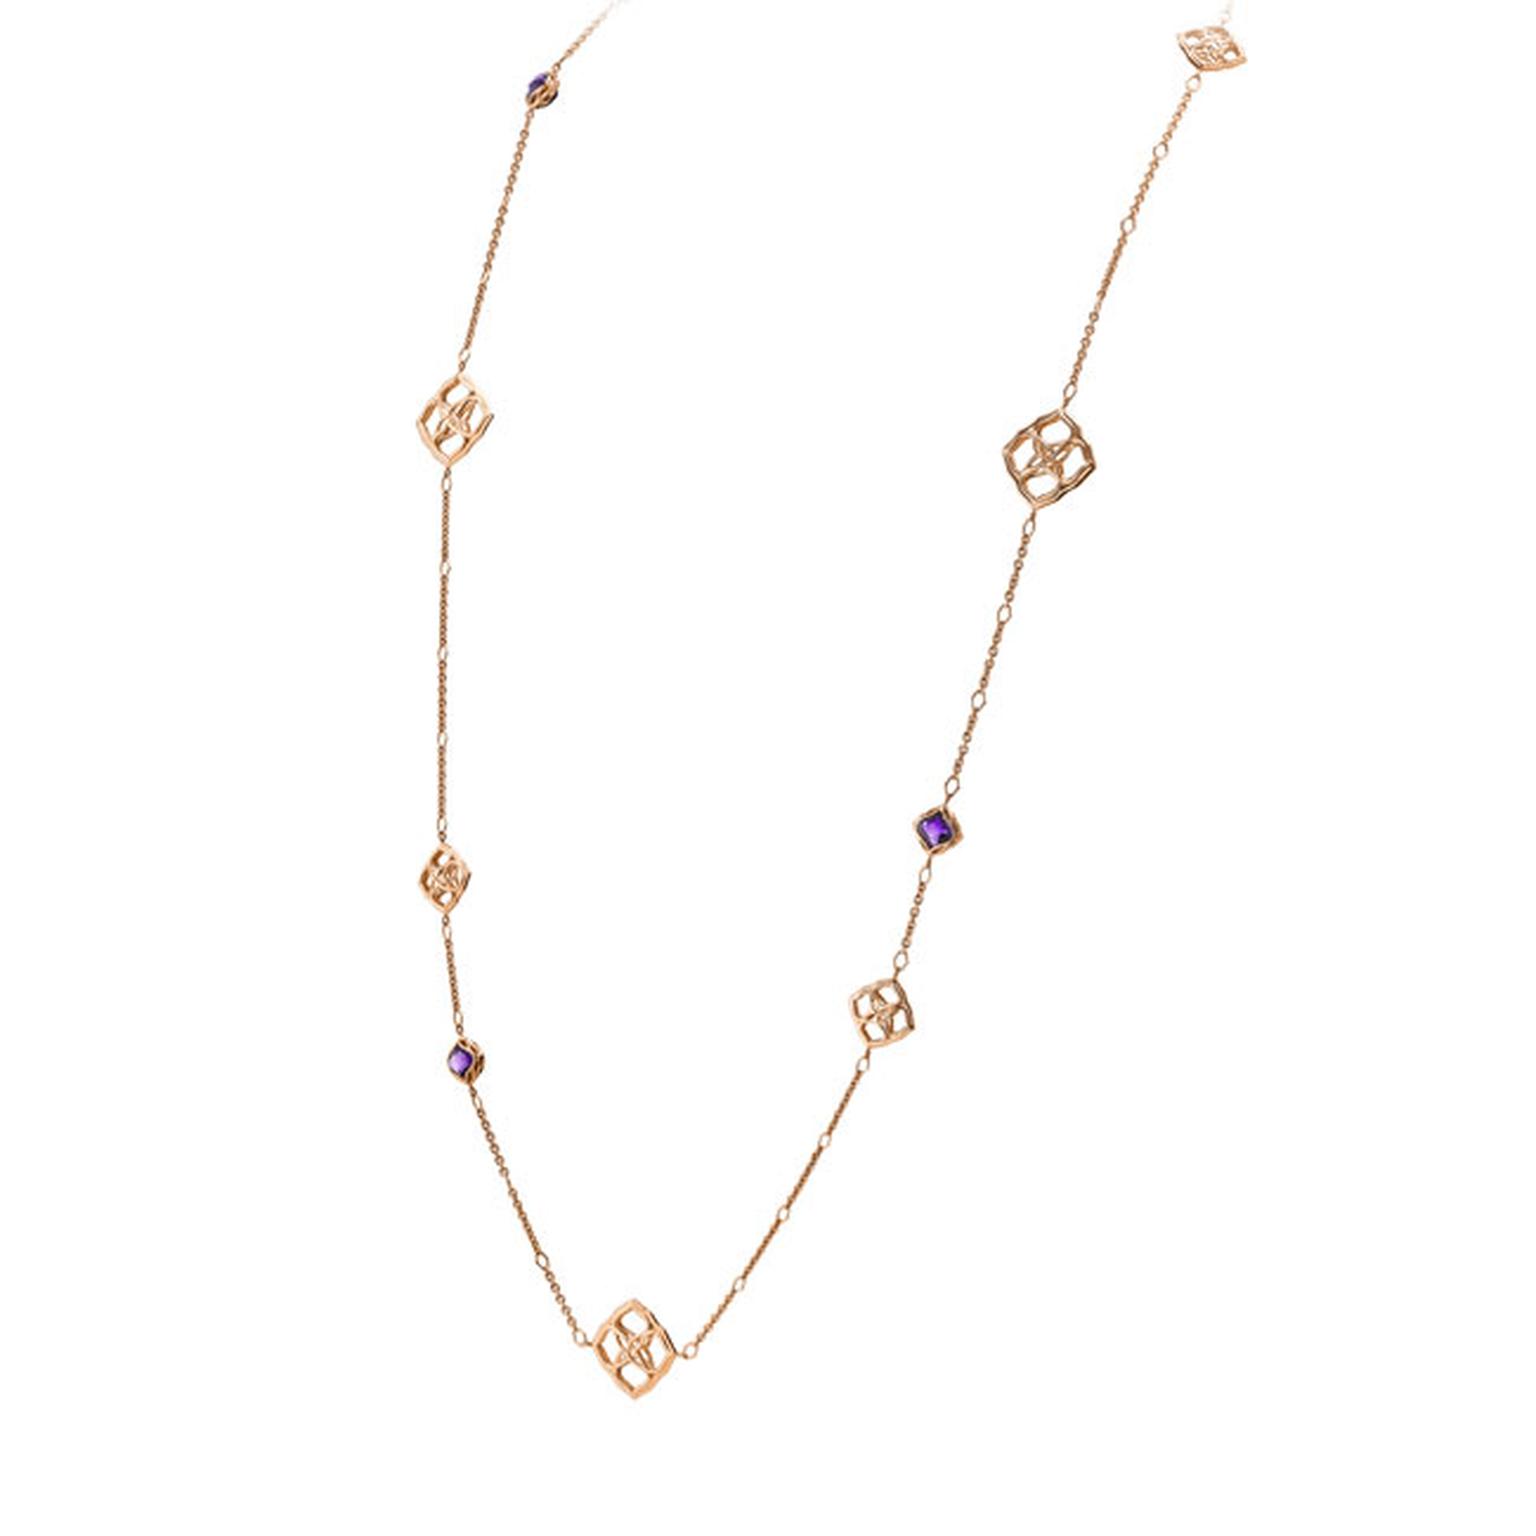 Chopard Imperiale sautoir necklace_main